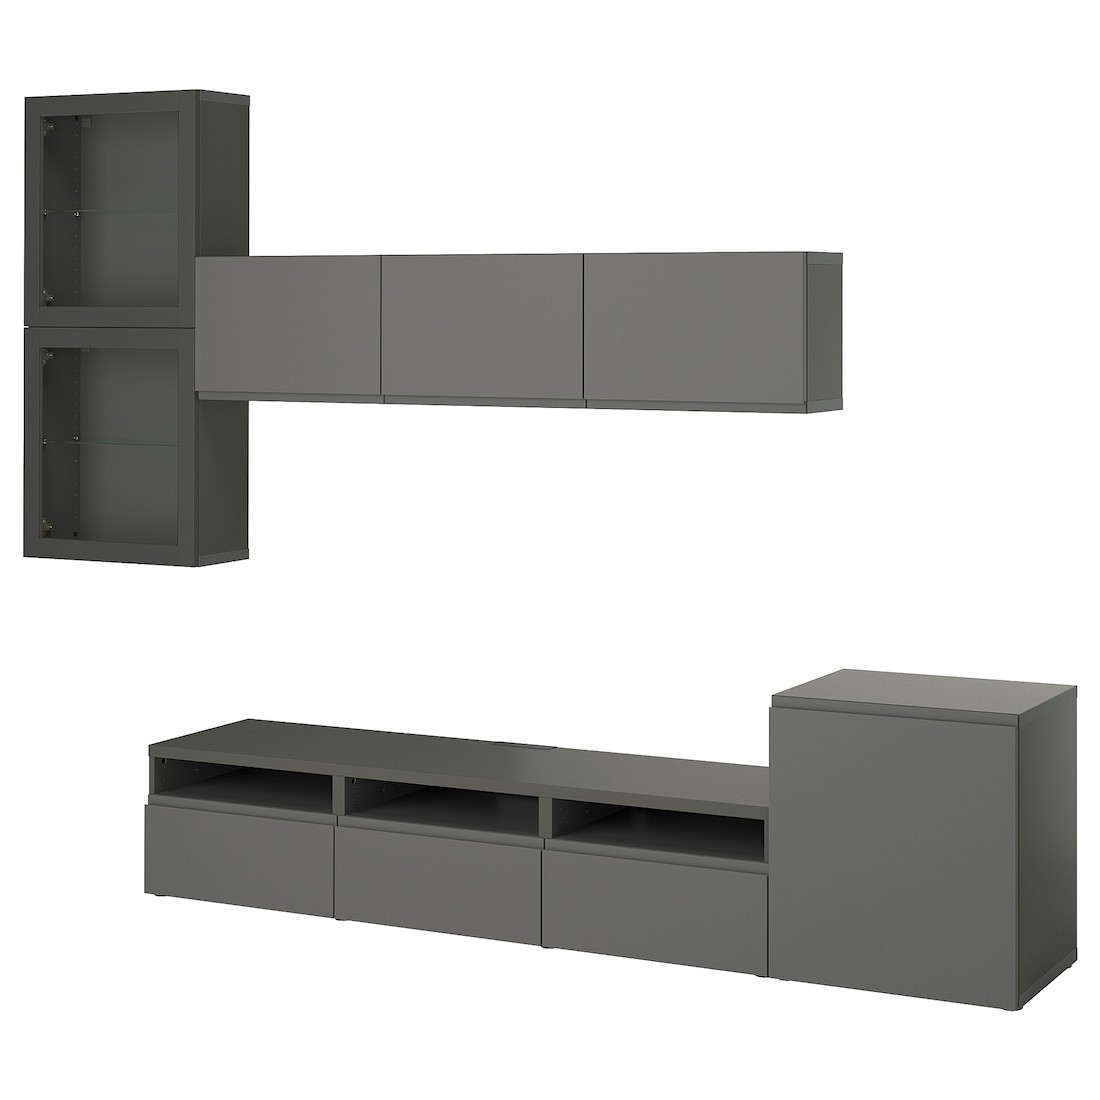 IKEA BESTÅ Комбинация для ТВ / стеклянные двери, темно-серый Västerviken / Sindvik темно-серый, 300x42x211 см 79556077 | 795.560.77